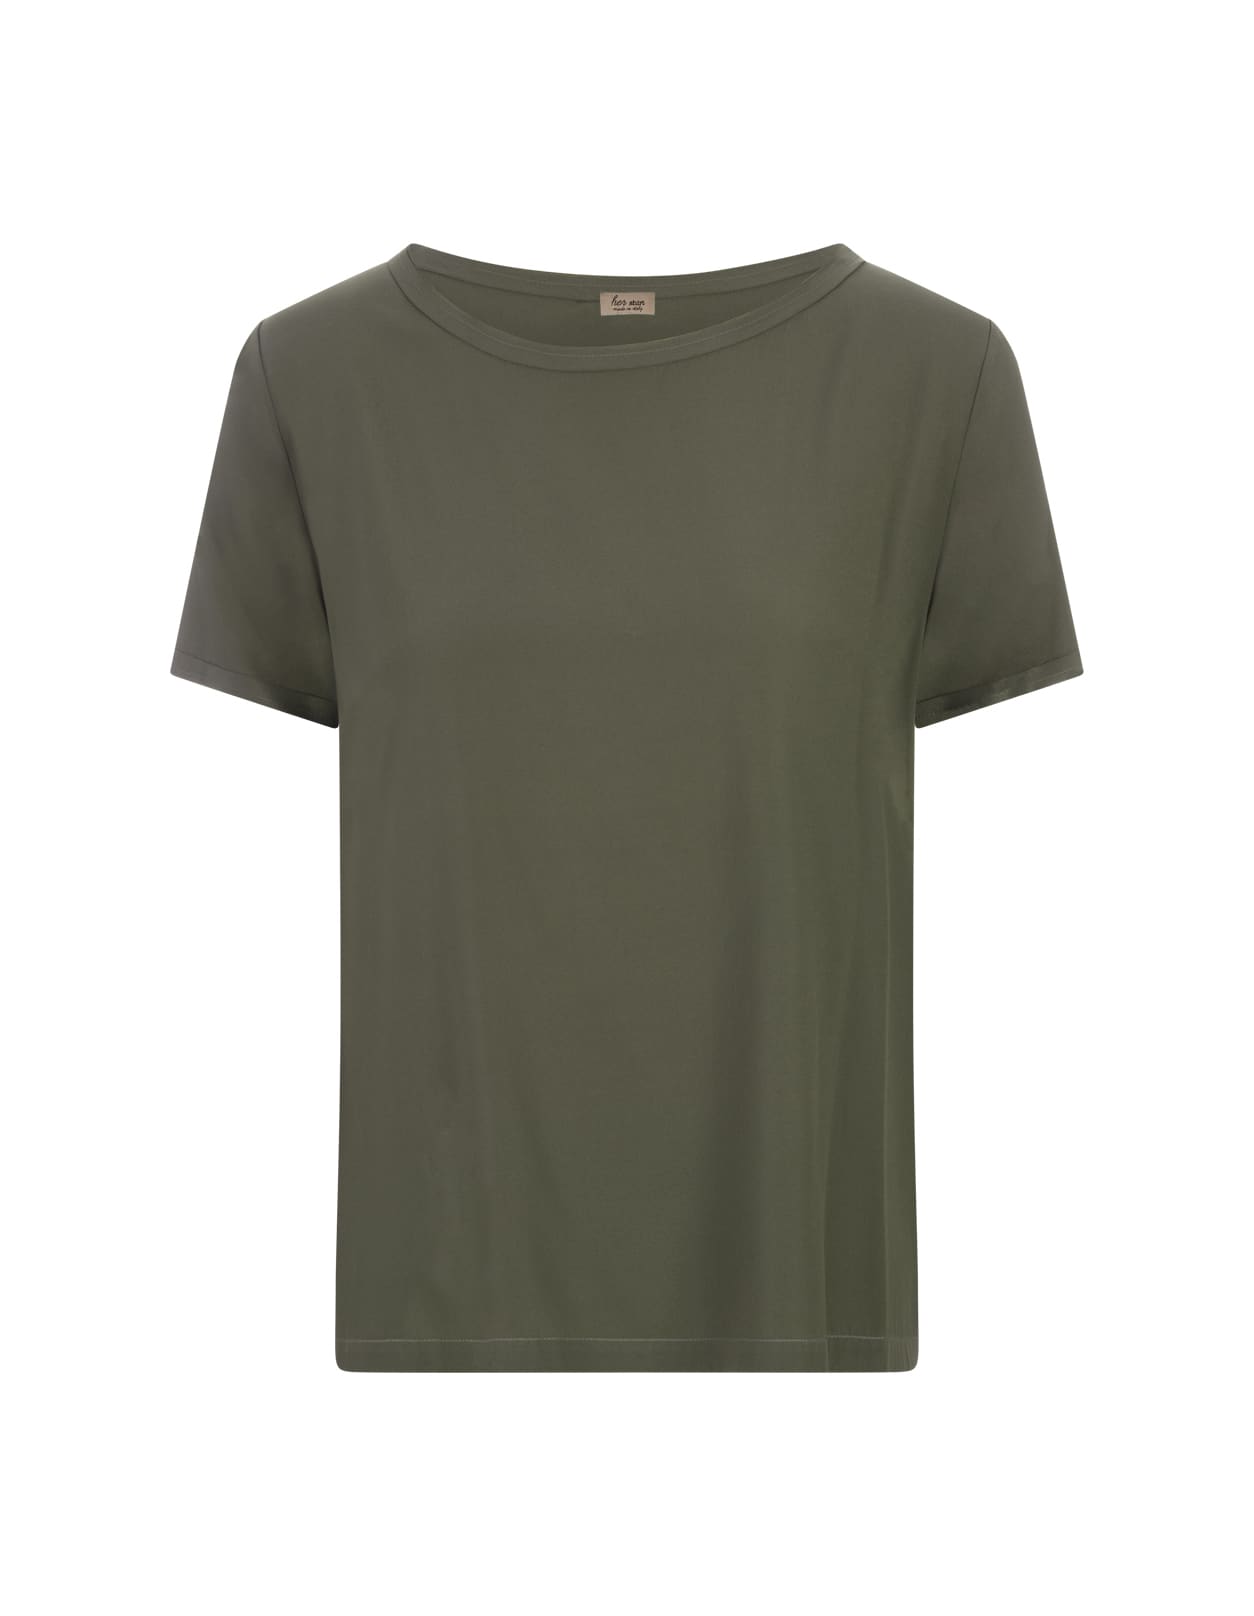 Her Shirt Military Green Opaque Silk T-shirt